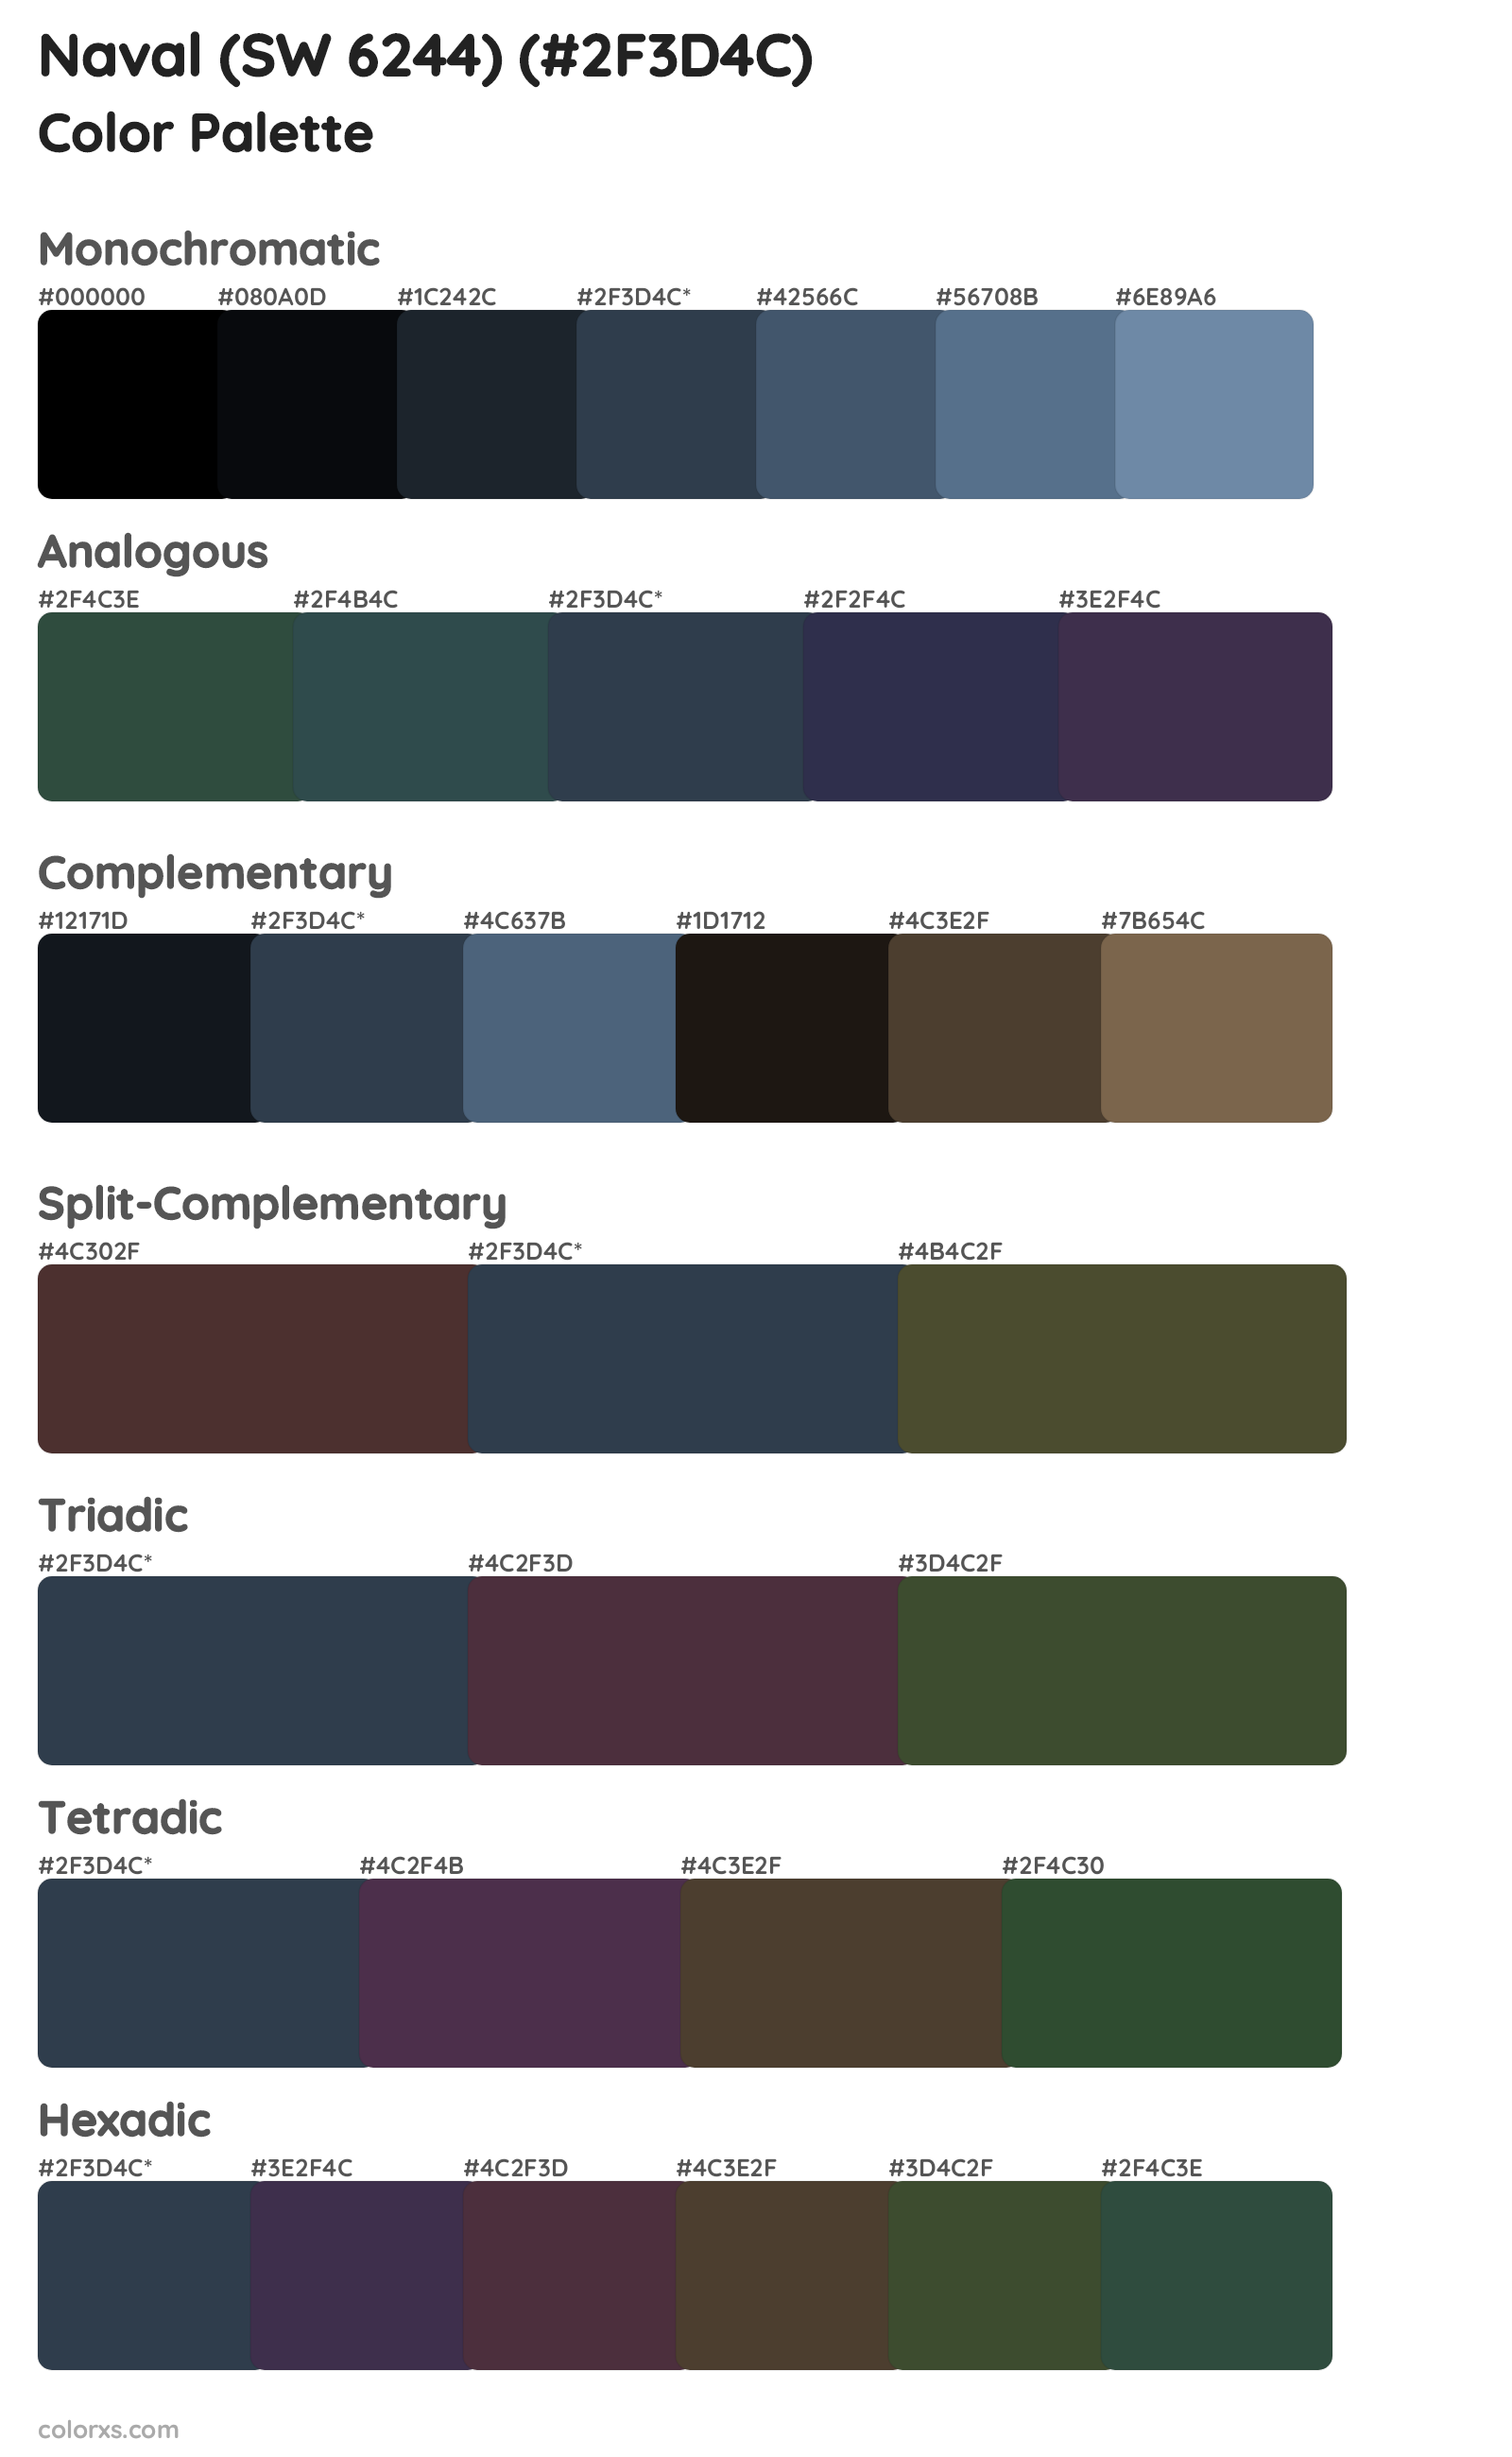 Naval (SW 6244) Color Scheme Palettes